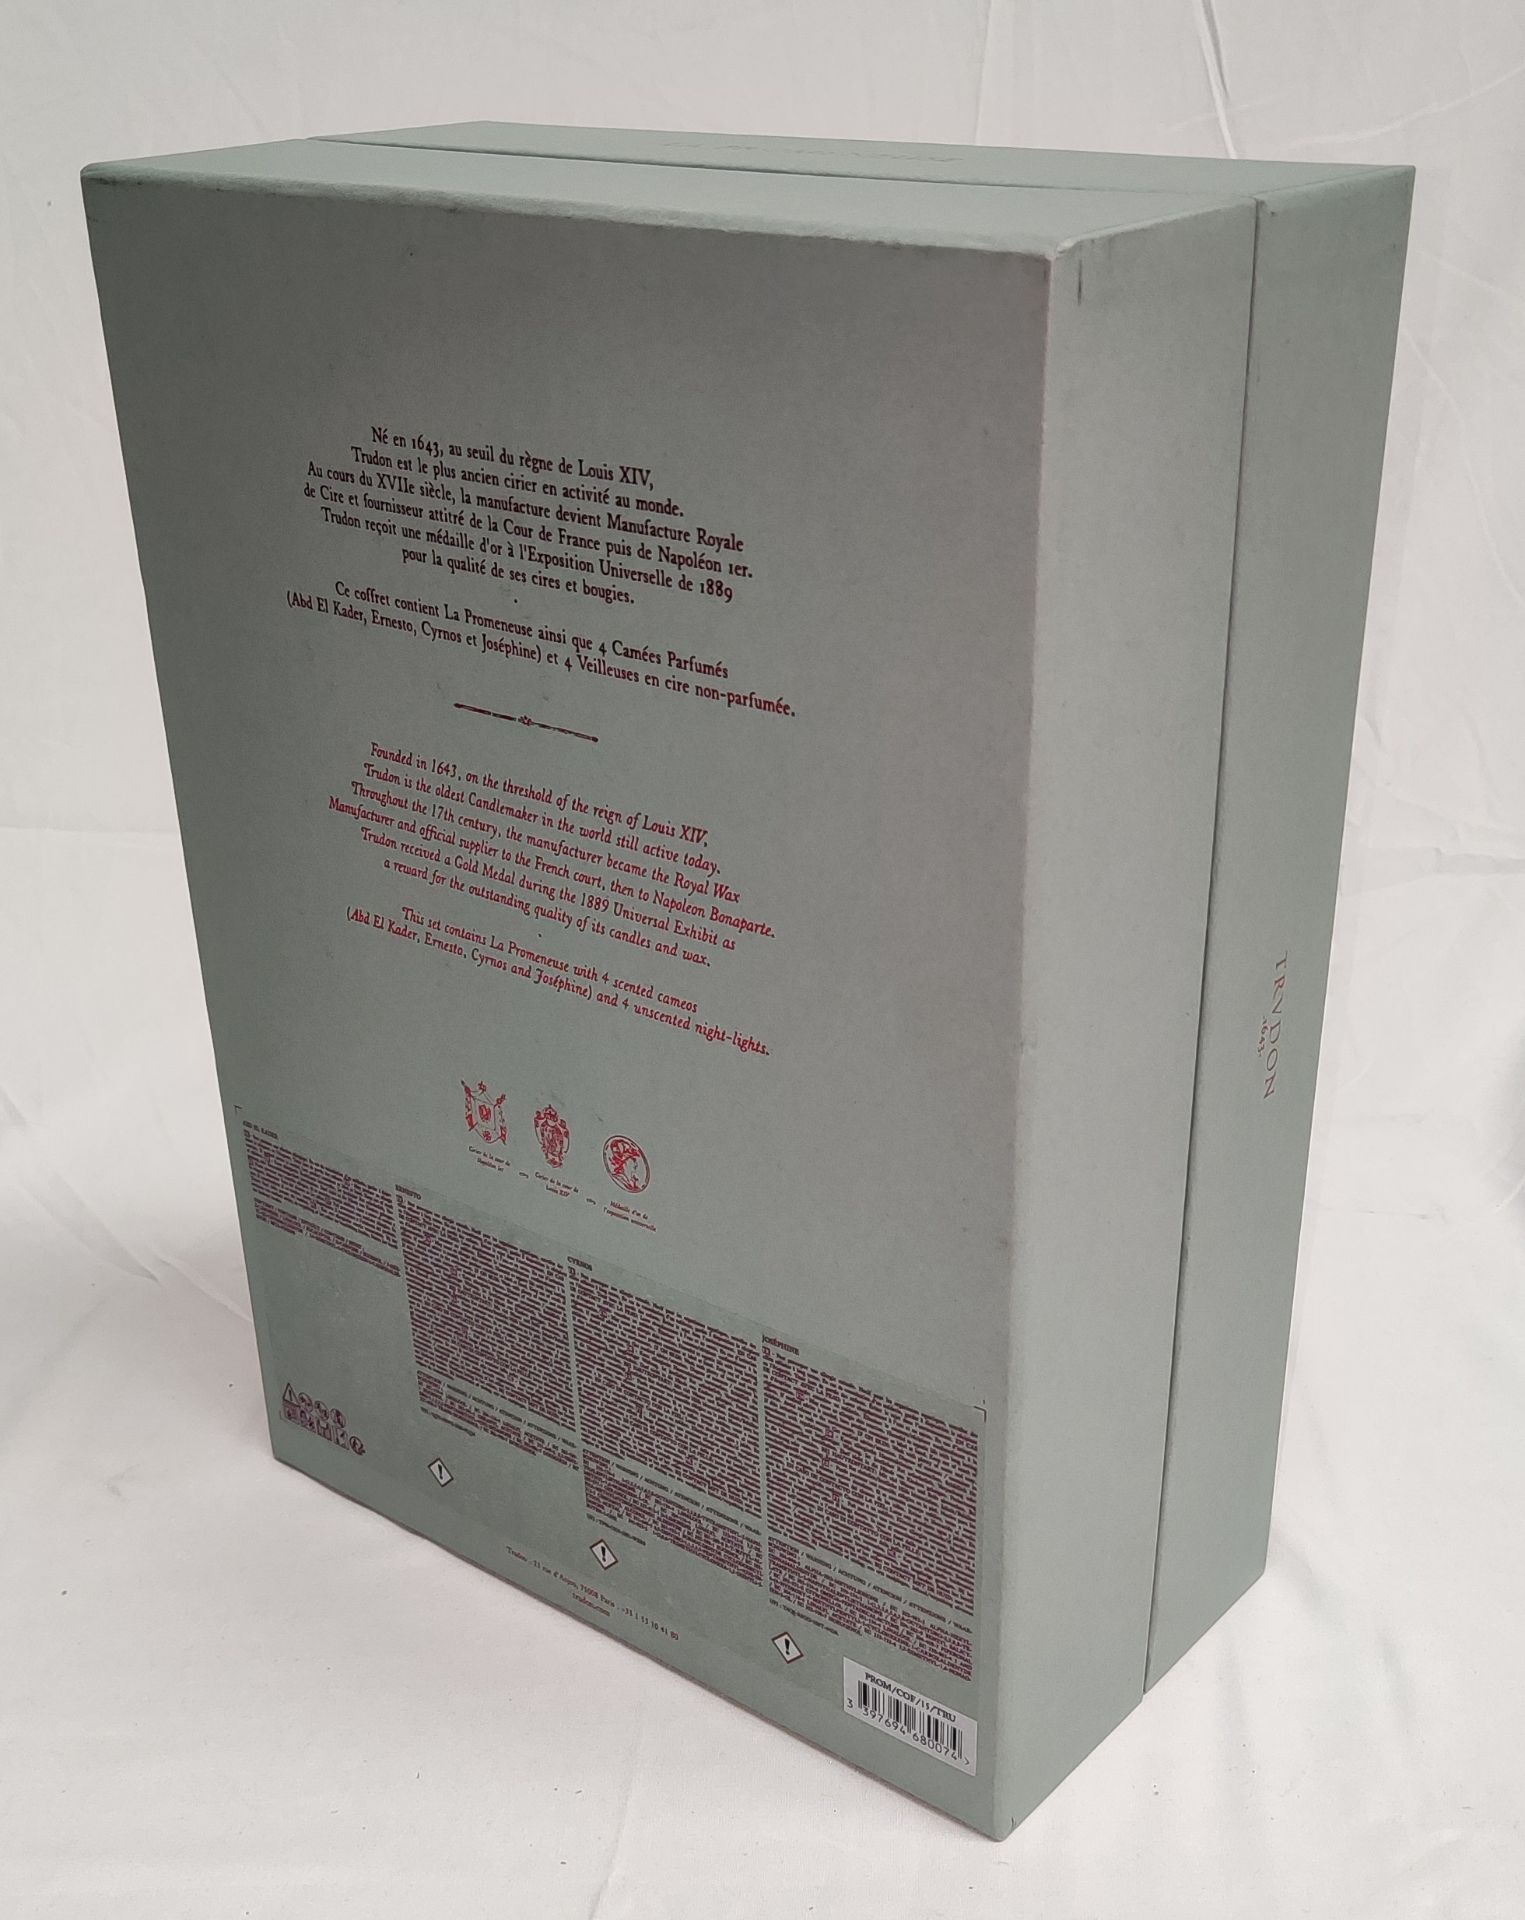 1 x TRUDON La Promeneuse Glass Diffuser - Boxed - Original RRP £320 - Ref: 5211353/HJL358/C19/07- - Image 8 of 16